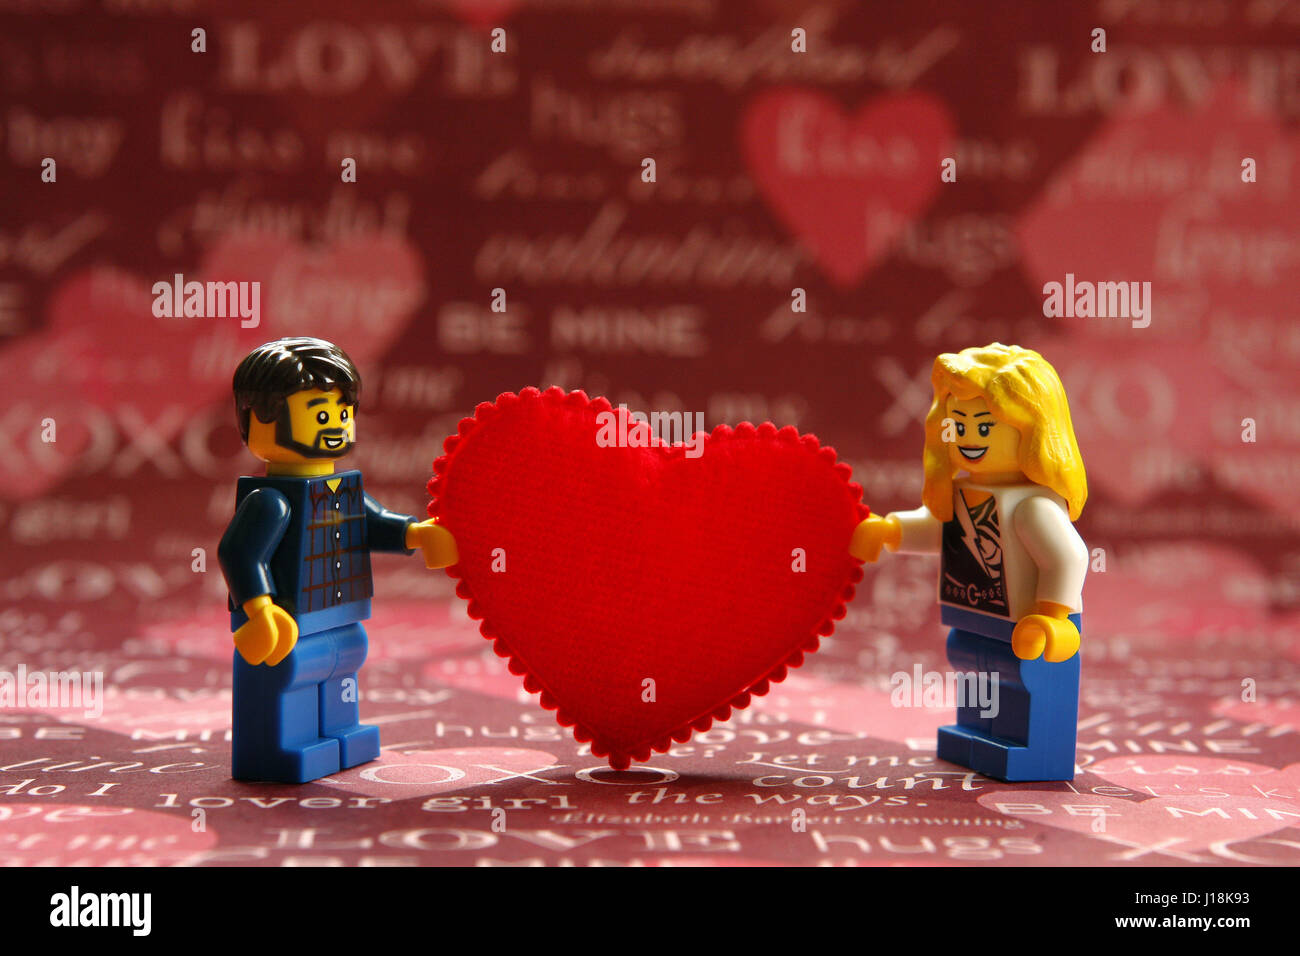 Maschio e femmina gente lego tenendo un cuore rosso per San Valentino Foto  stock - Alamy